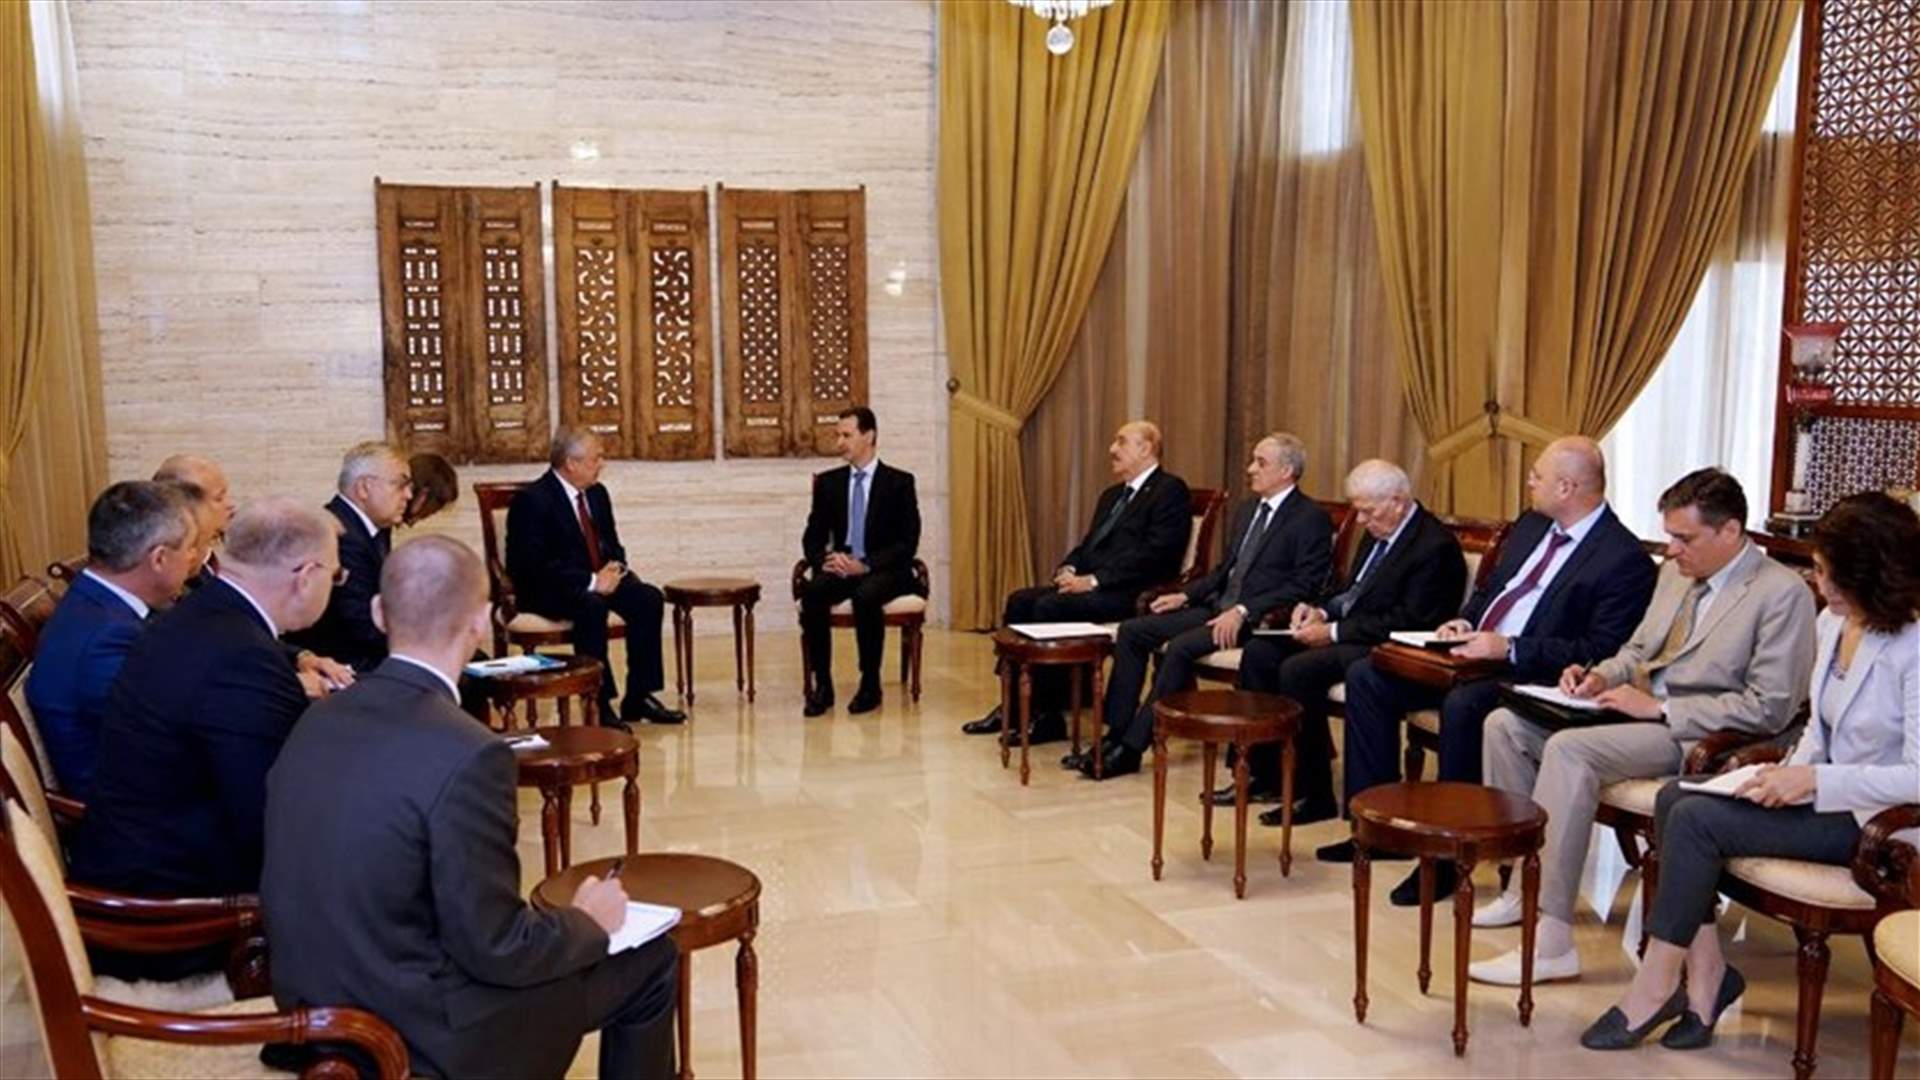 الأسد التقى بمسؤولين روس في دمشق لبحث الوضع في سوريا